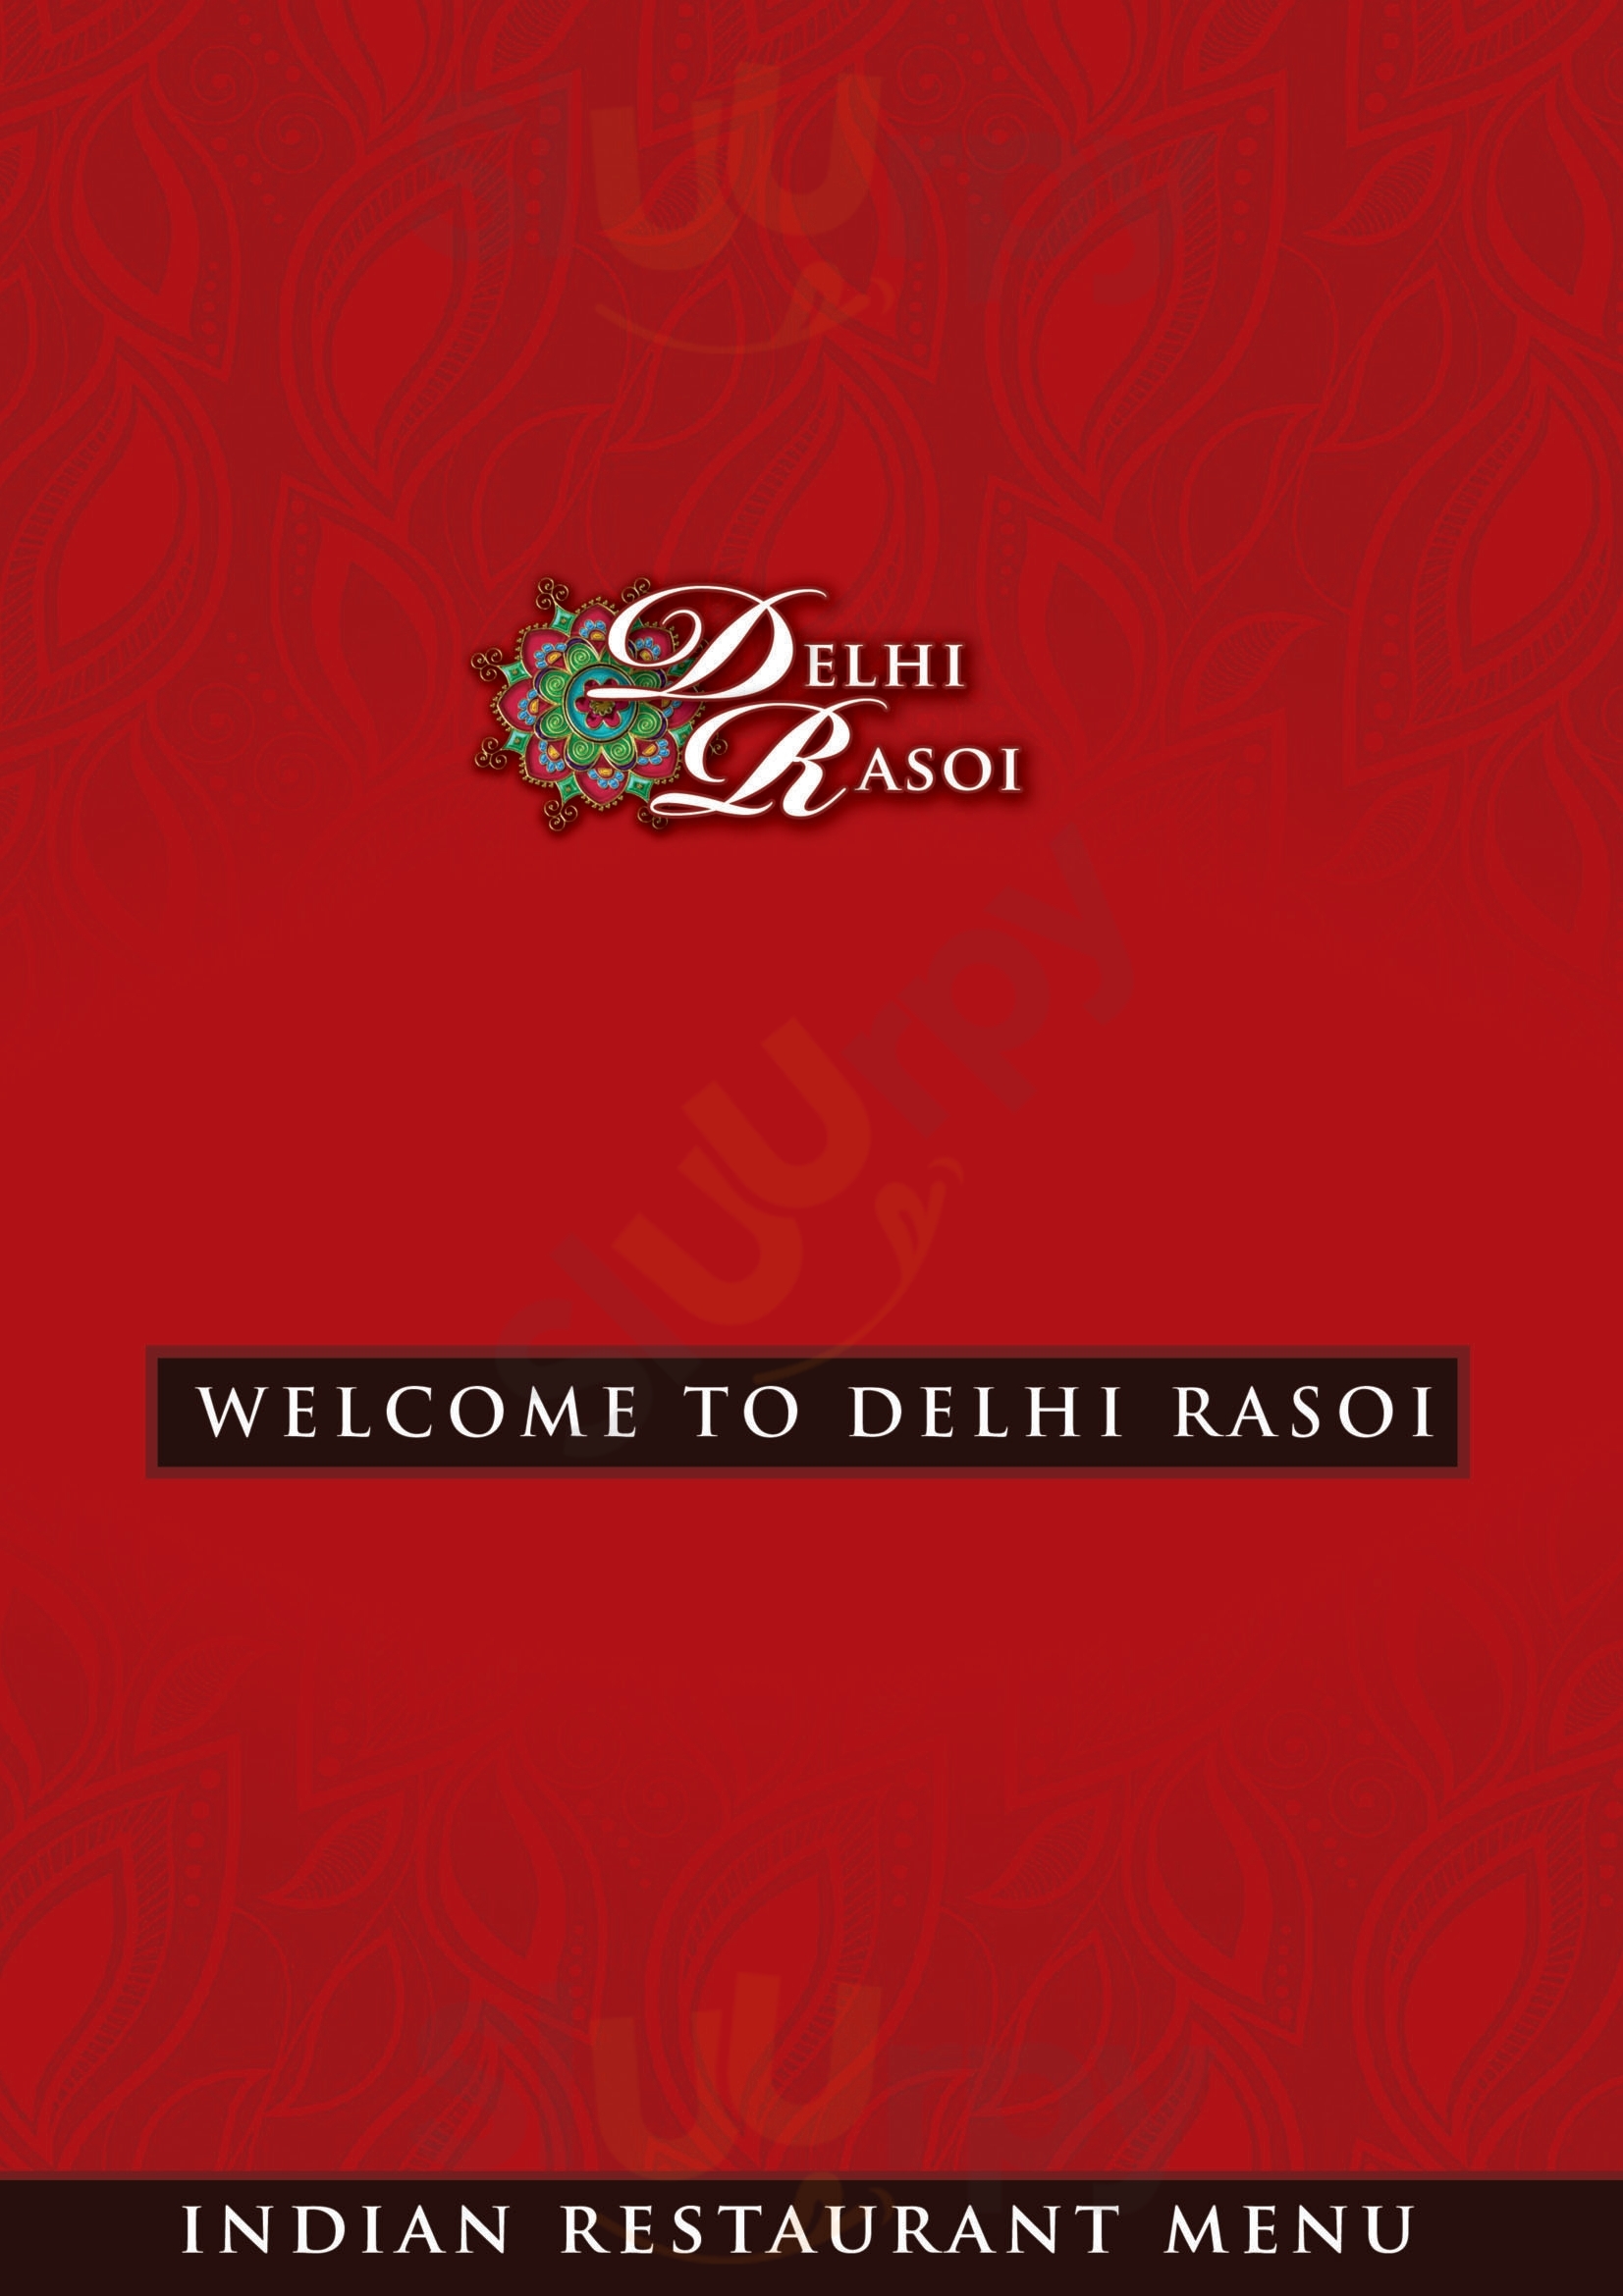 Delhi Rasoi Dun Laoghaire Menu - 1